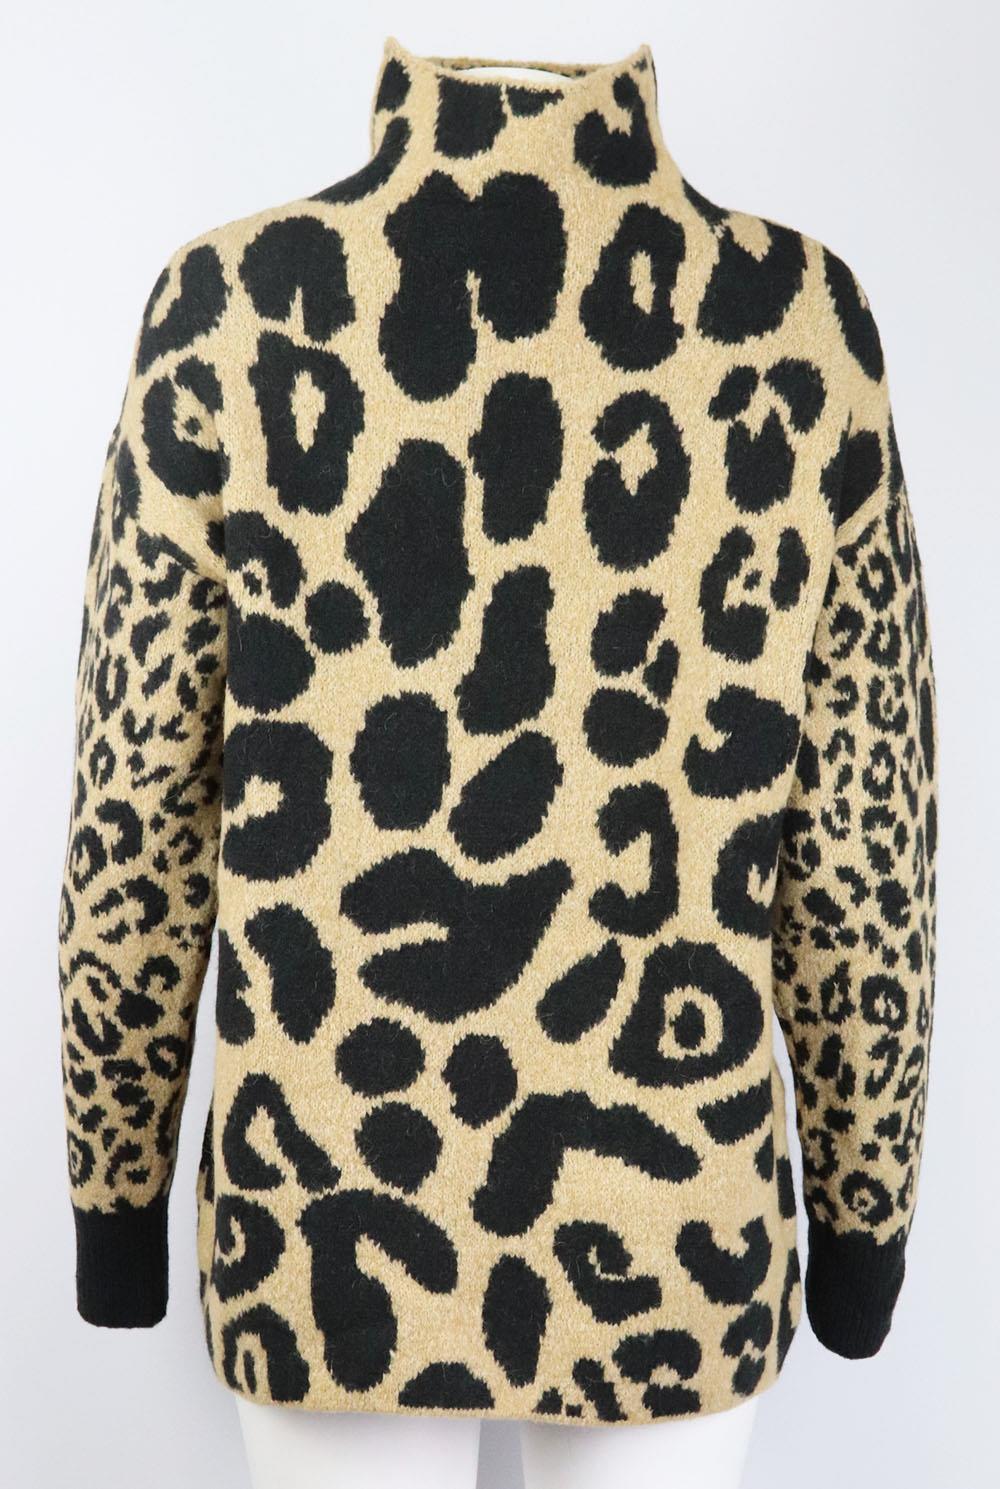 stella mccartney leopard sweater